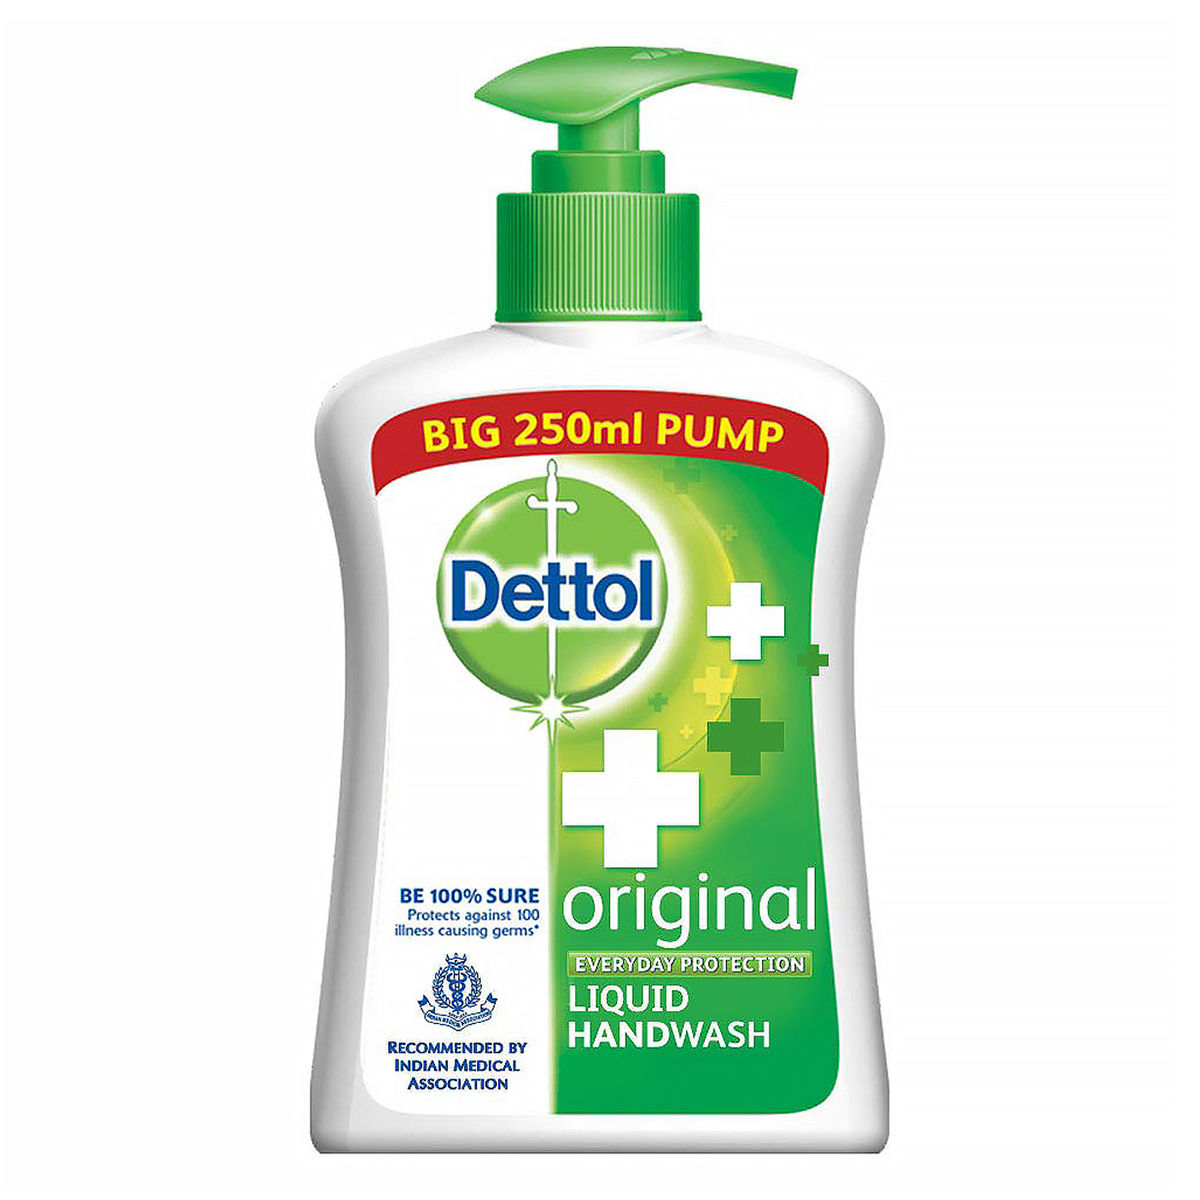 Buy Dettol Original Liquid Handwash, 250 ml Online